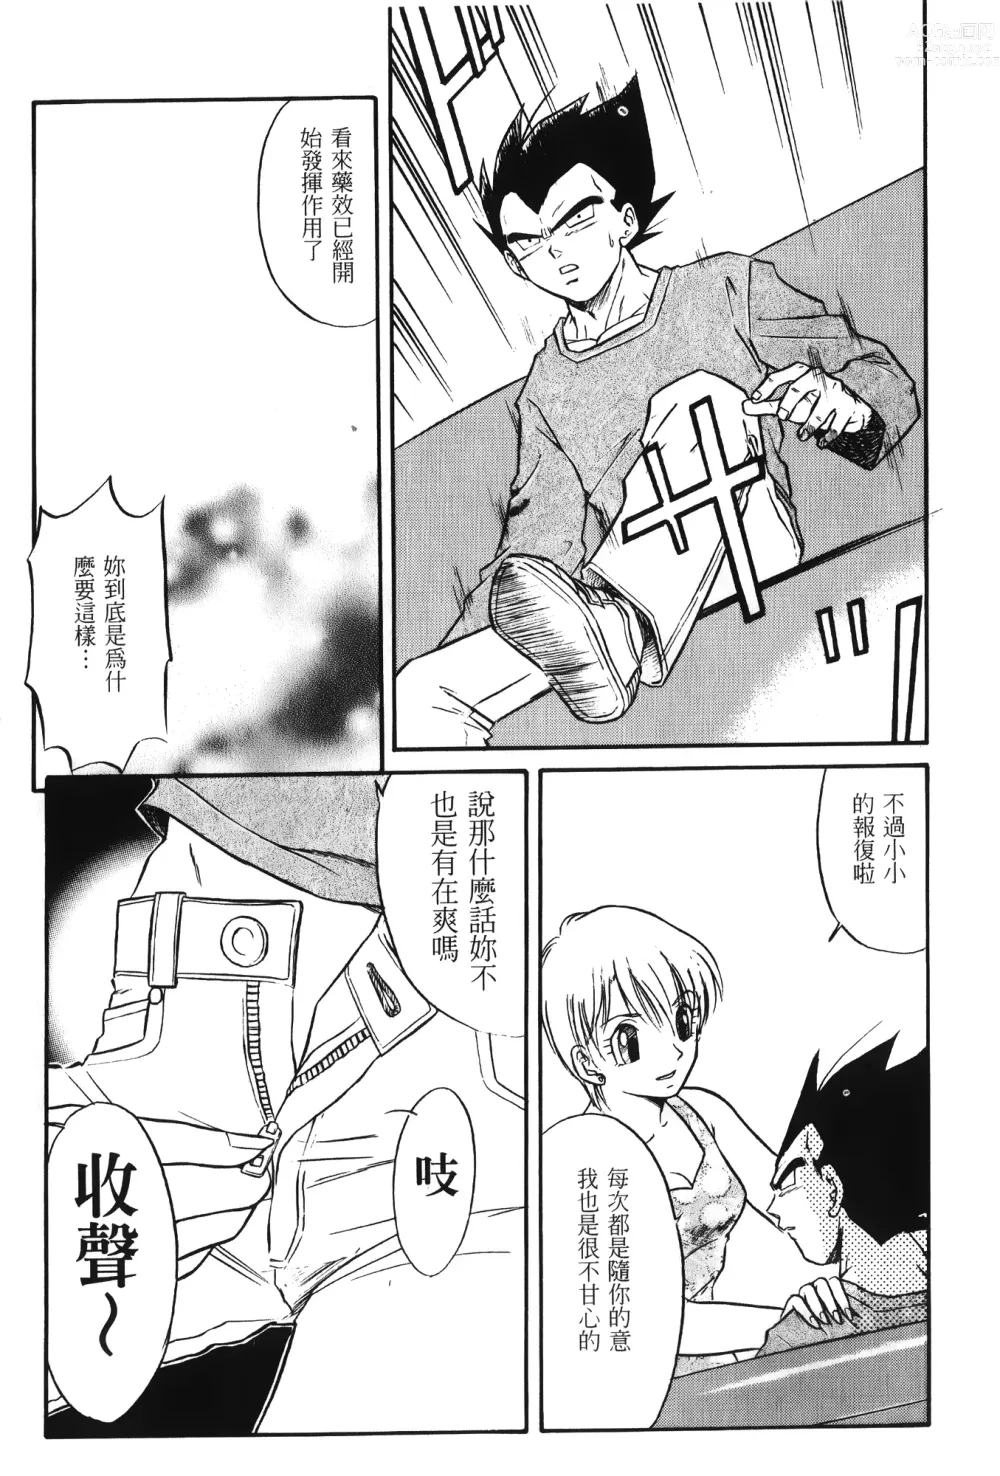 Page 24 of doujinshi ドラゴンパール 01